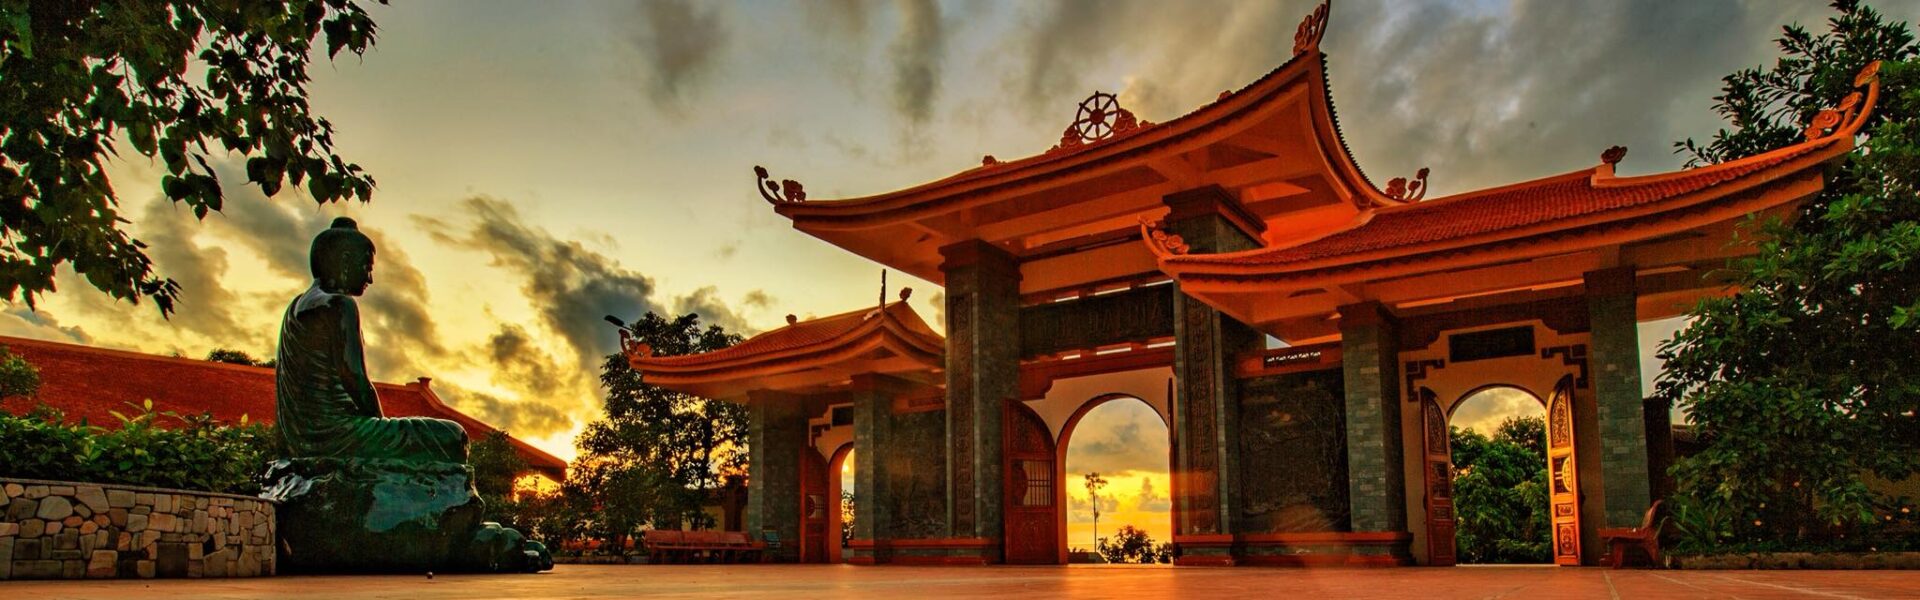 Tổng hợp những ngôi chùa Phú Quốc nổi tiếng tâm linh - Ảnh đại diện